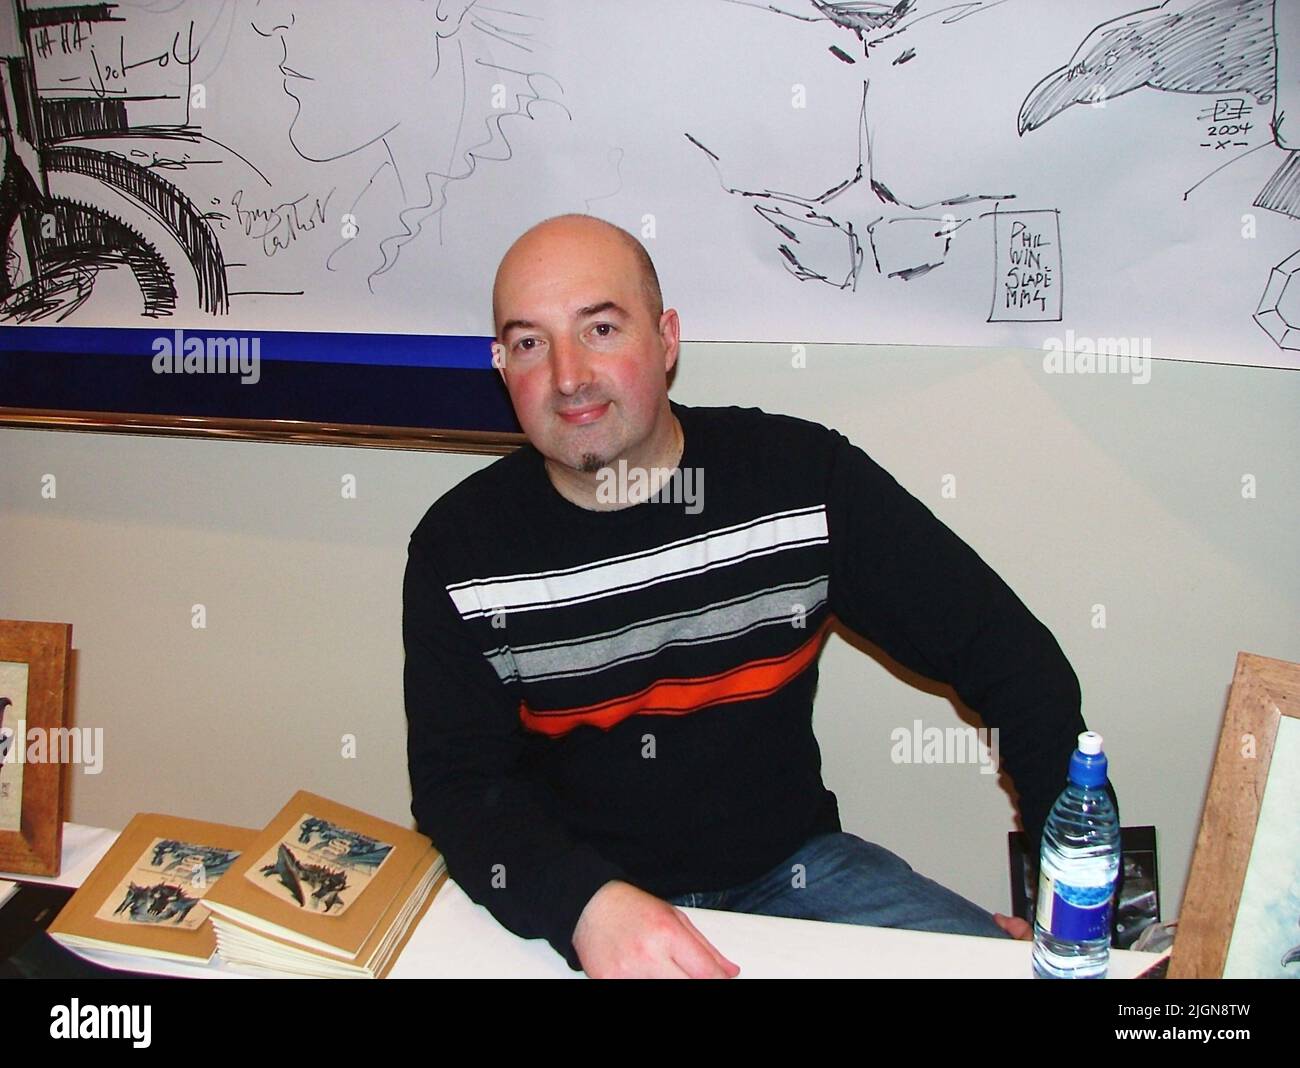 Il fumettista inglese David Hitchcock, noto principalmente per la sua piccola opera di fumetti da stampa – in particolare per il suo libro Springheeled Jack, per il quale ha vinto l'Aquila Foto Stock